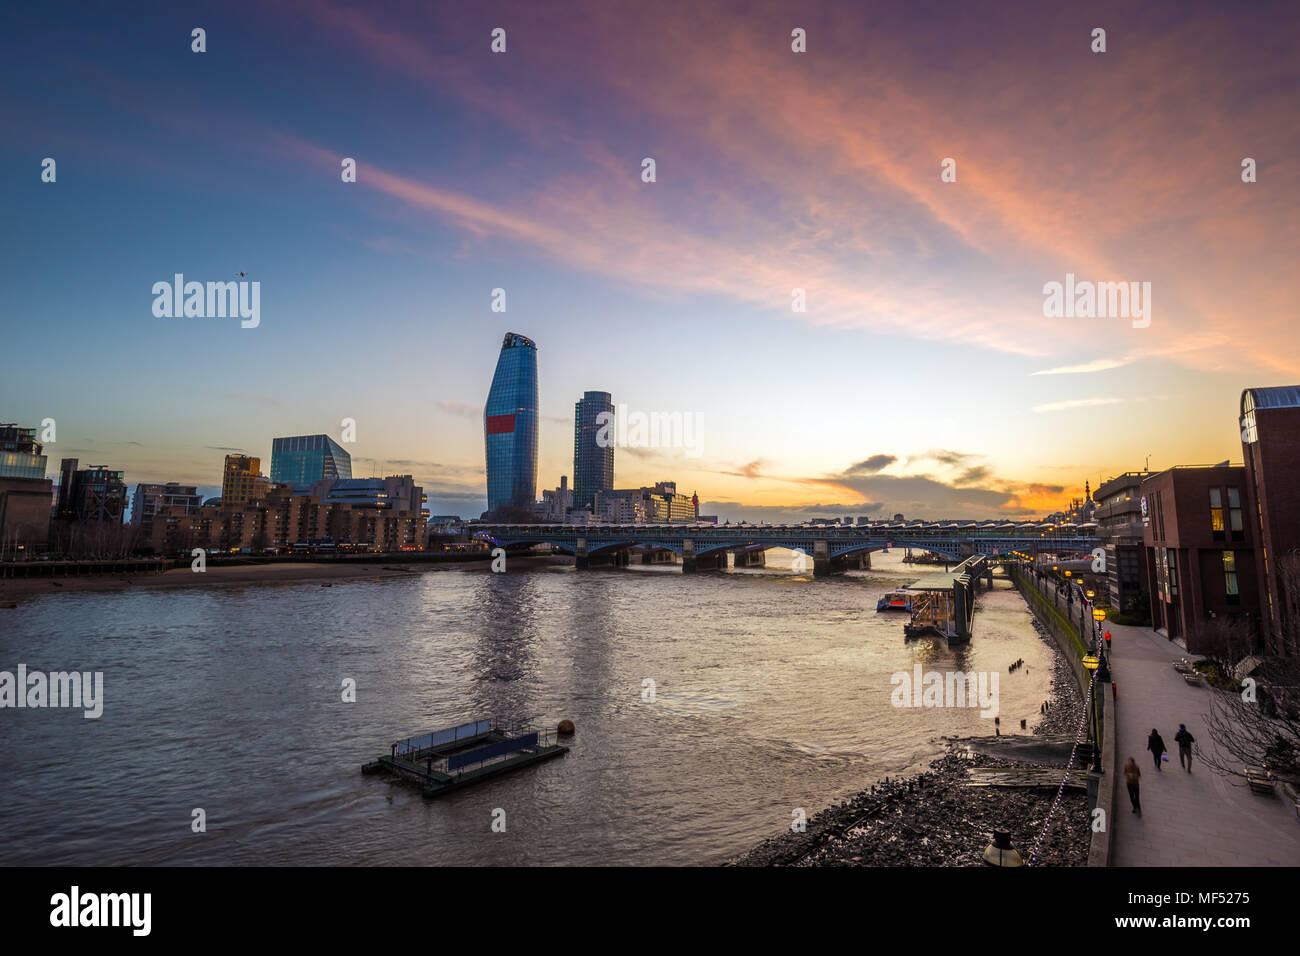 London, England - schönen Sonnenuntergang in London mit Wolkenkratzern und Blackfriars Bridge über die Themse. Stockfoto